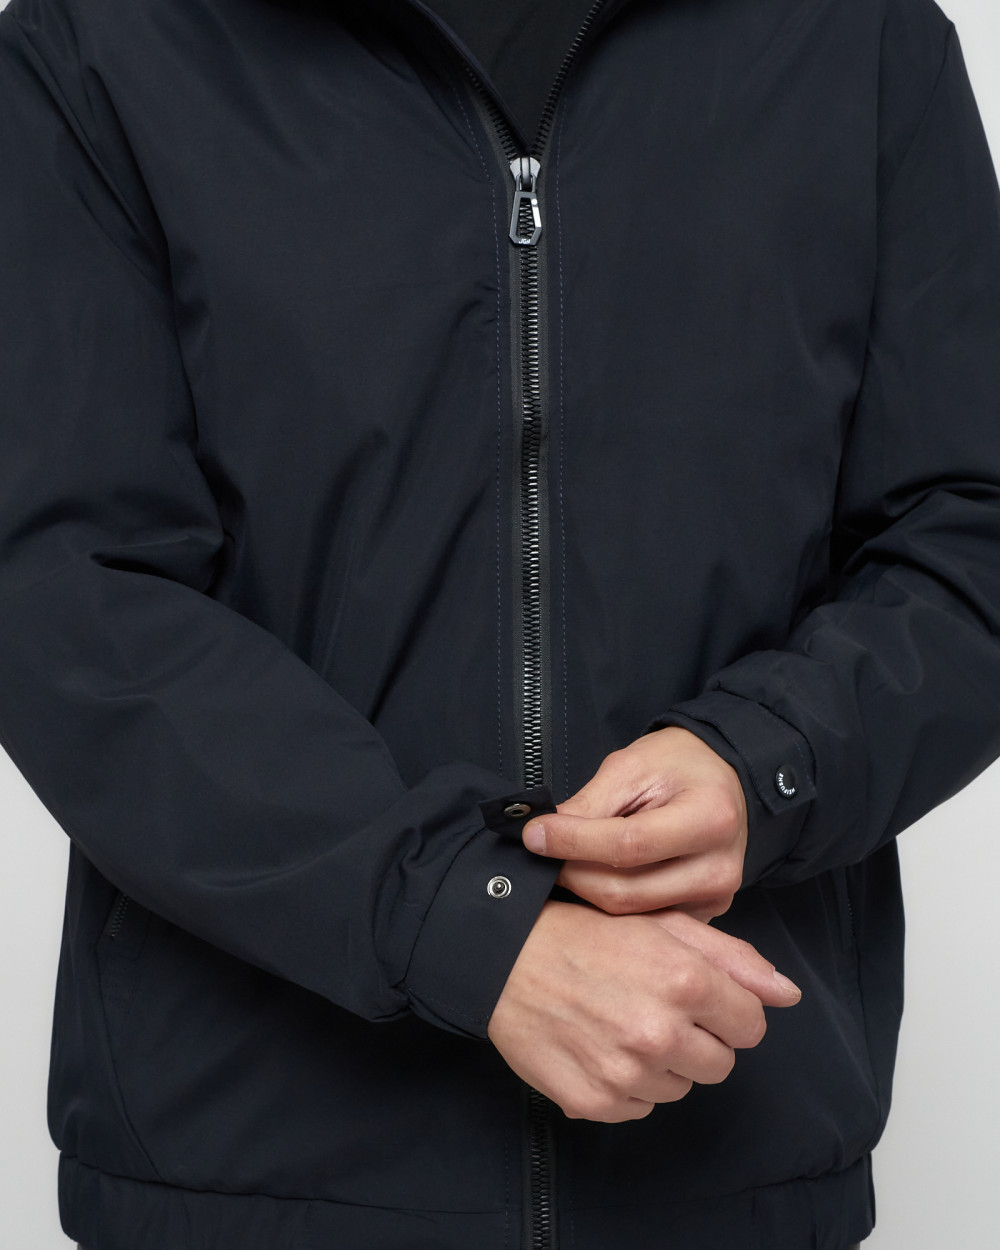 Купить куртку мужскую большого размера оптом от производителя недорого в Москве 88657TS 1